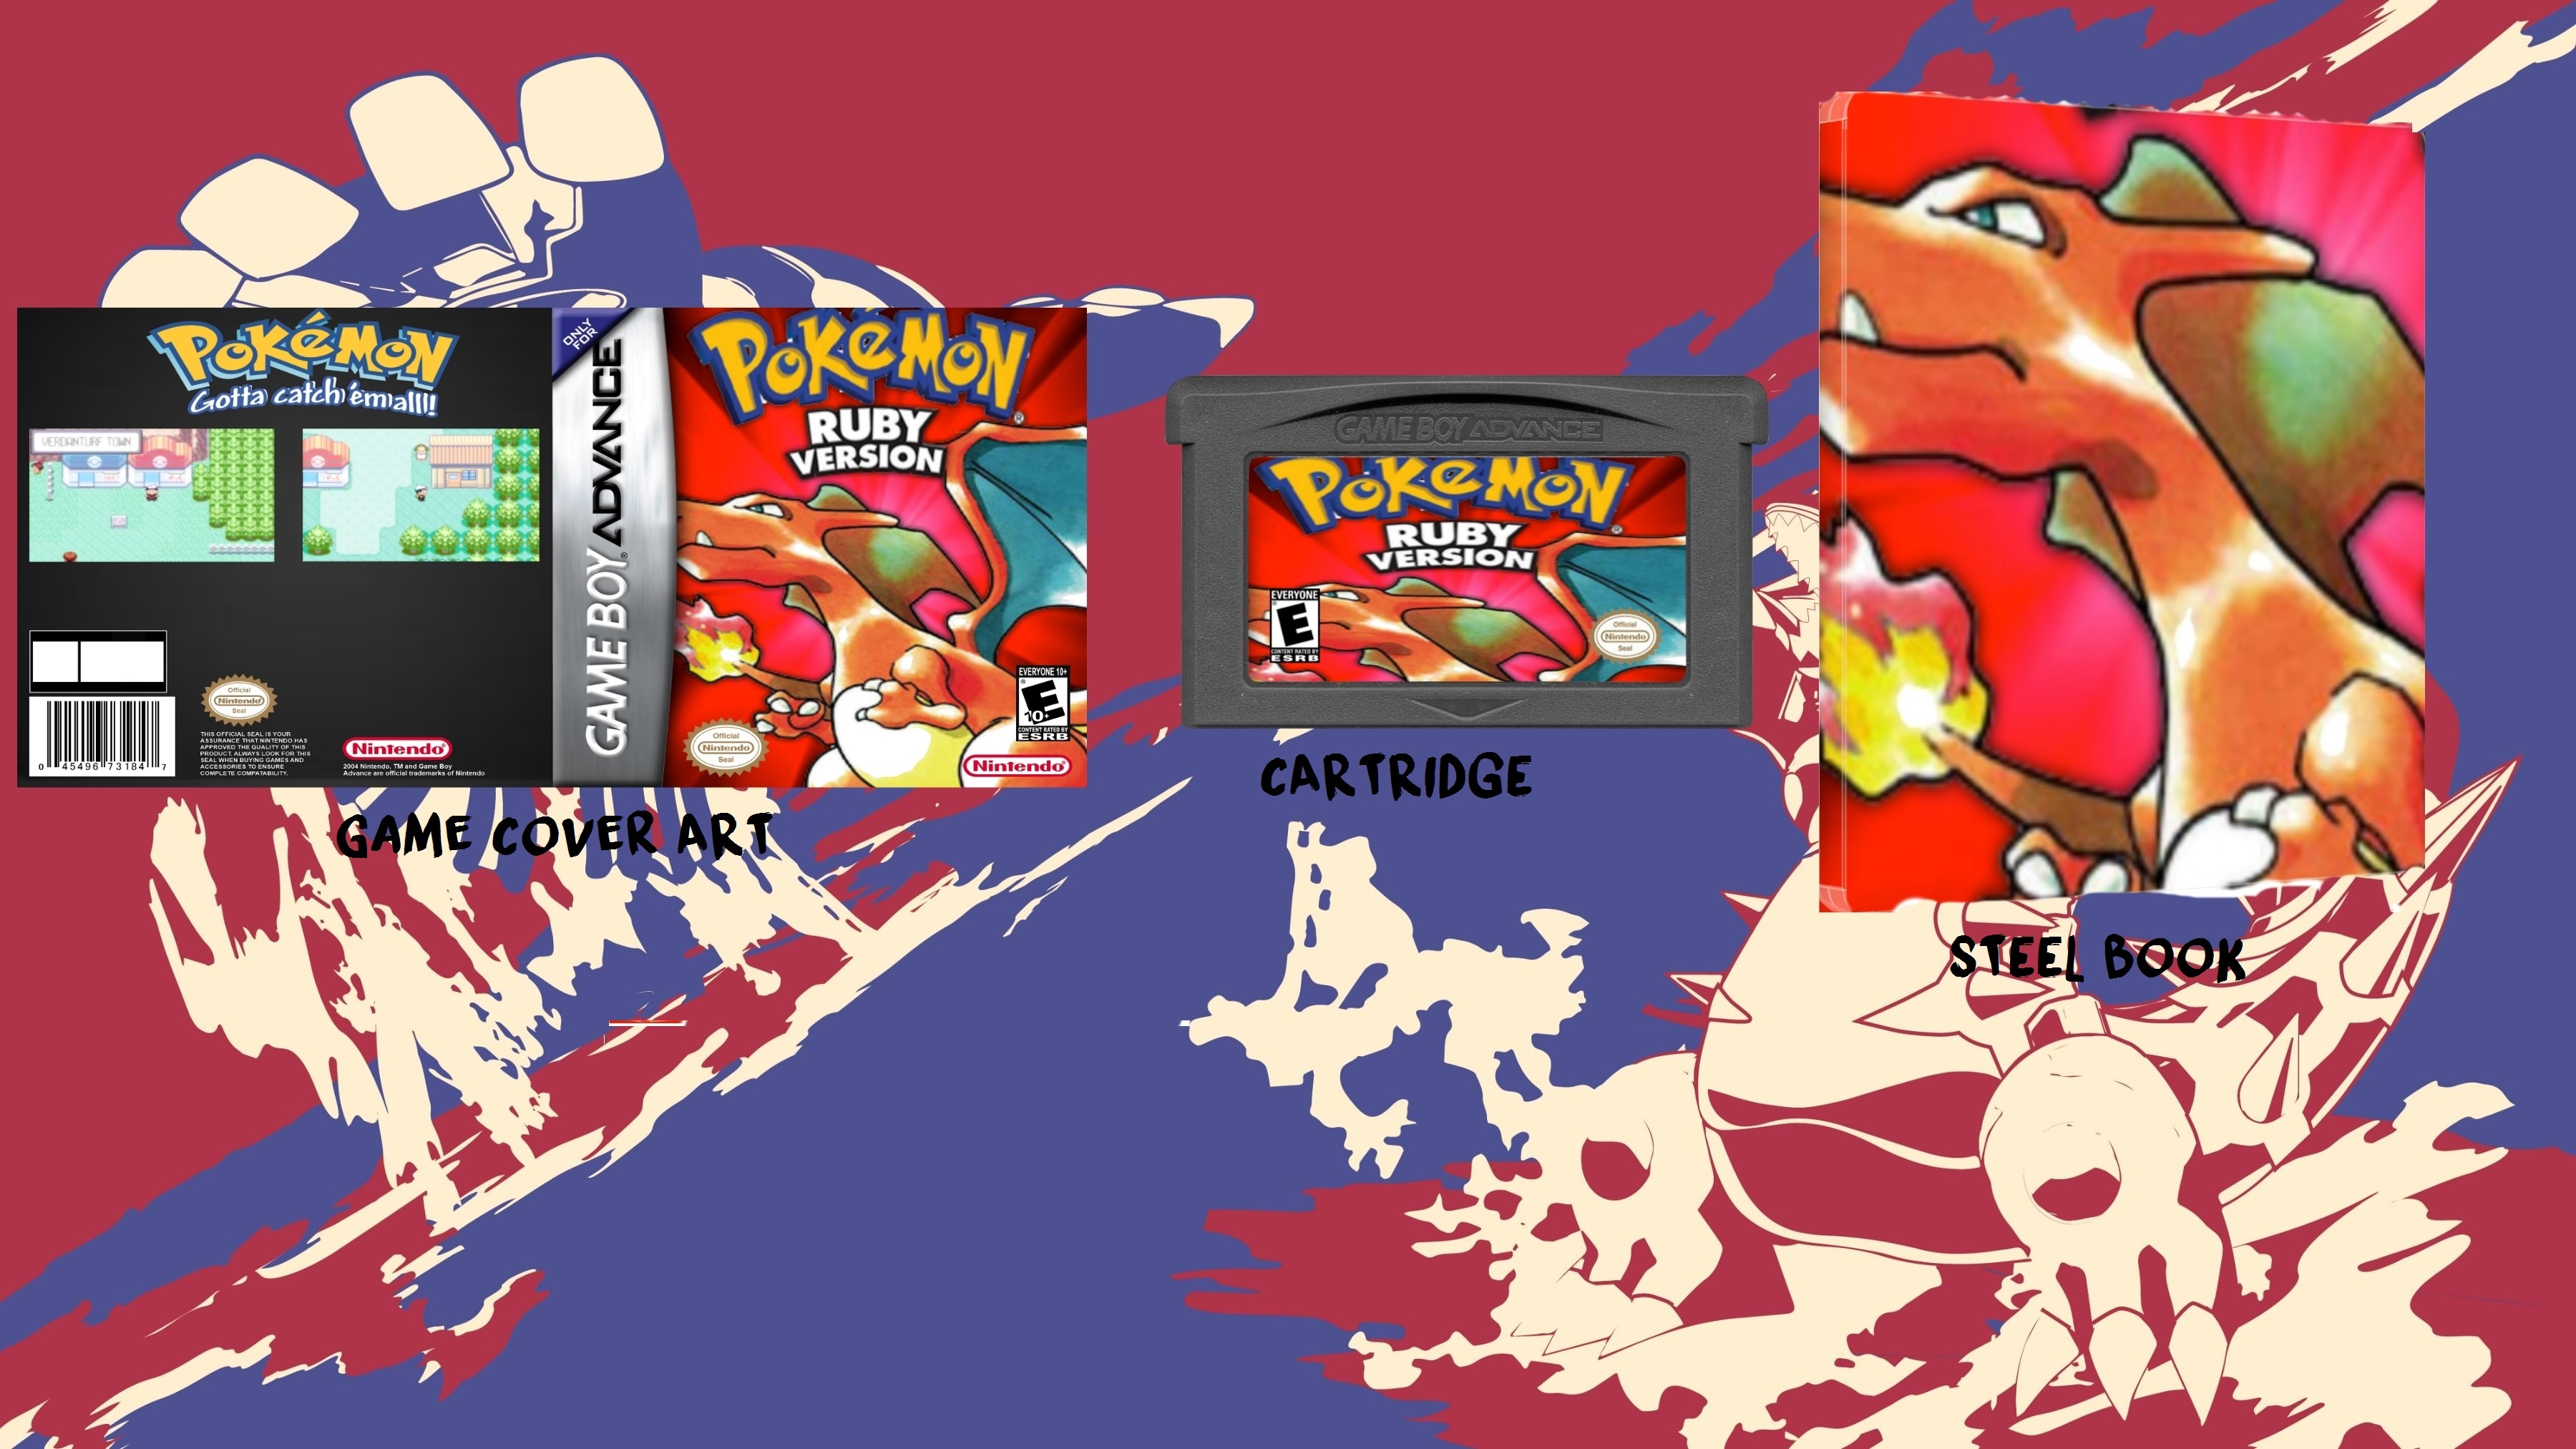 Pokemon Ruby Collectors Edition box cover